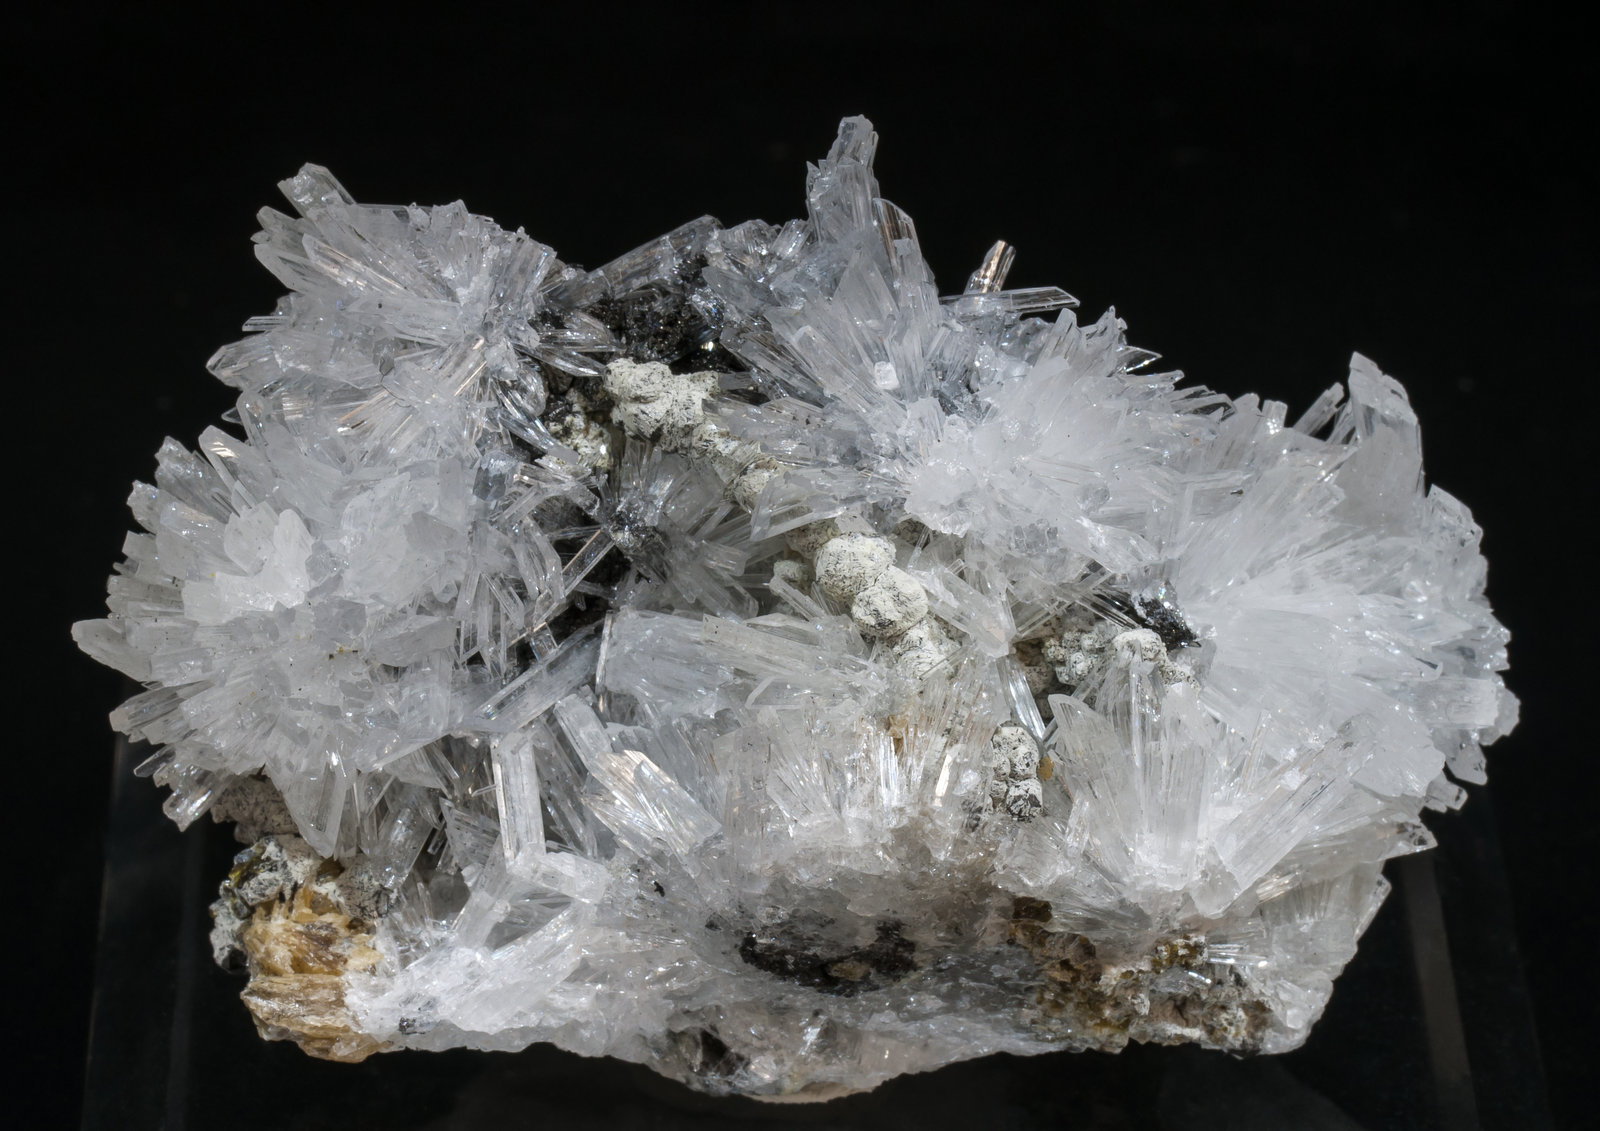 specimens/s_imagesAG5/Olshanskyite-ET51AG5f.jpg